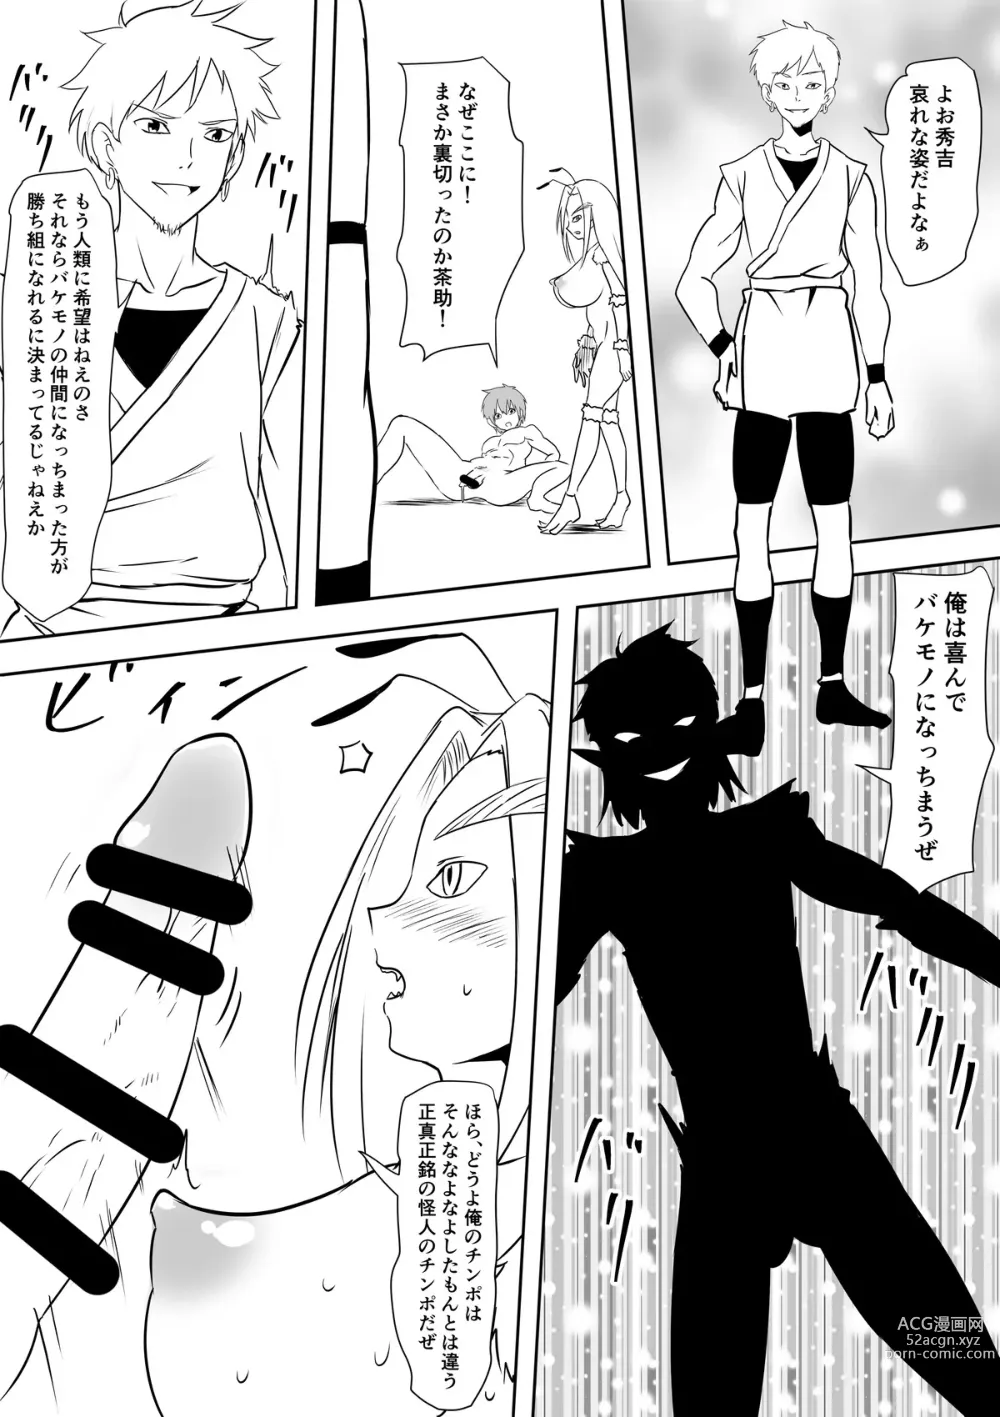 Page 2 of doujinshi 人類敗北物語怪人優子寝取られ風